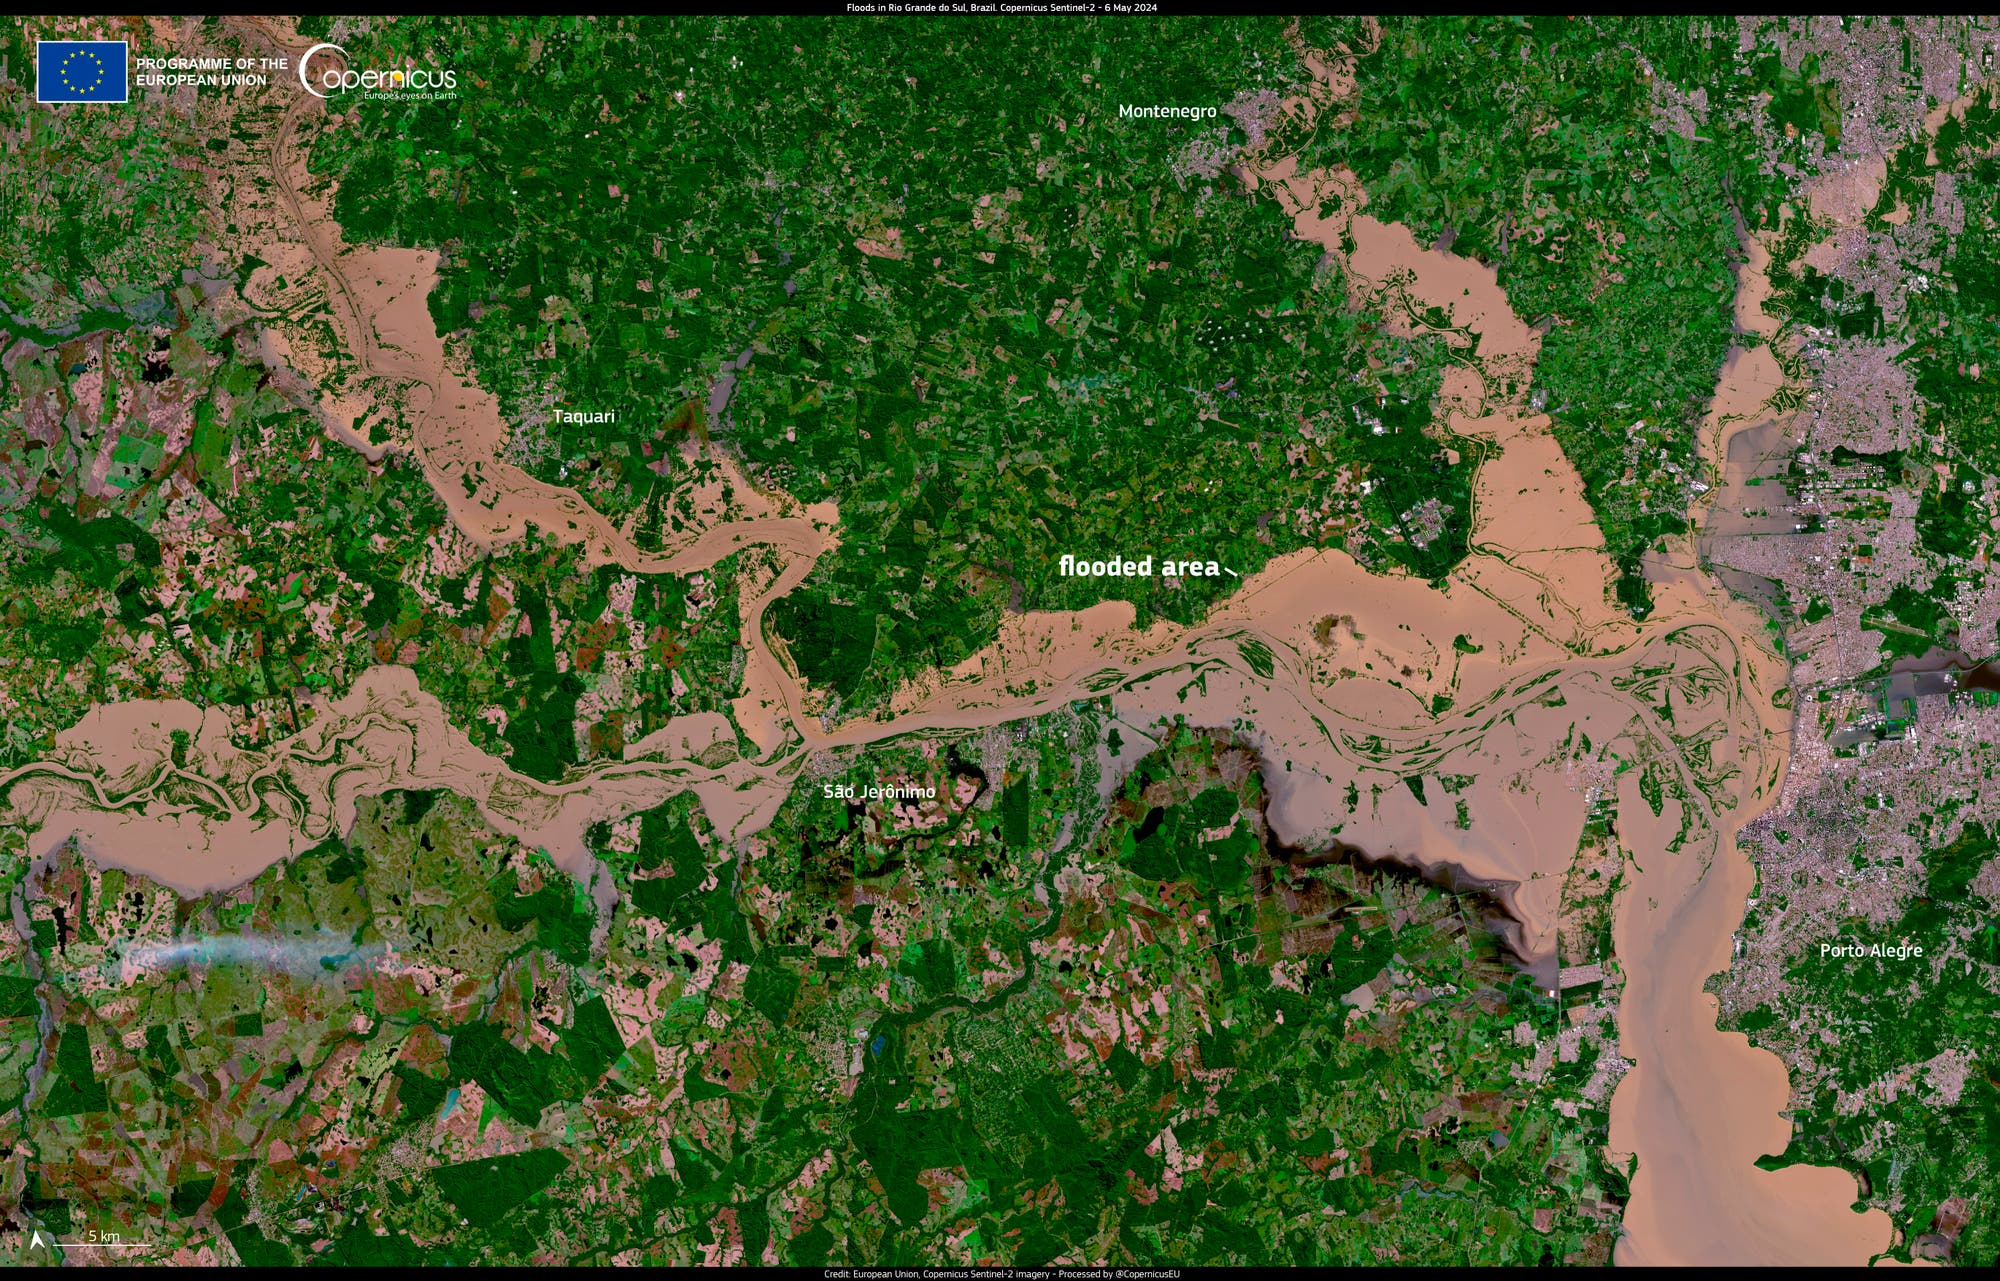 Satellietfoto van Rio Grande do Sul: Delen van de regio zijn ondergedompeld in bruine waterlichamen - inclusief de stad Porto Alegre, die kan worden gezien als een grijs gebied aan de rechterkant van het beeld.  De niet-overstroomde gebieden bestaan ​​uit boseilanden en landbouwgebieden met verschillende tinten groen